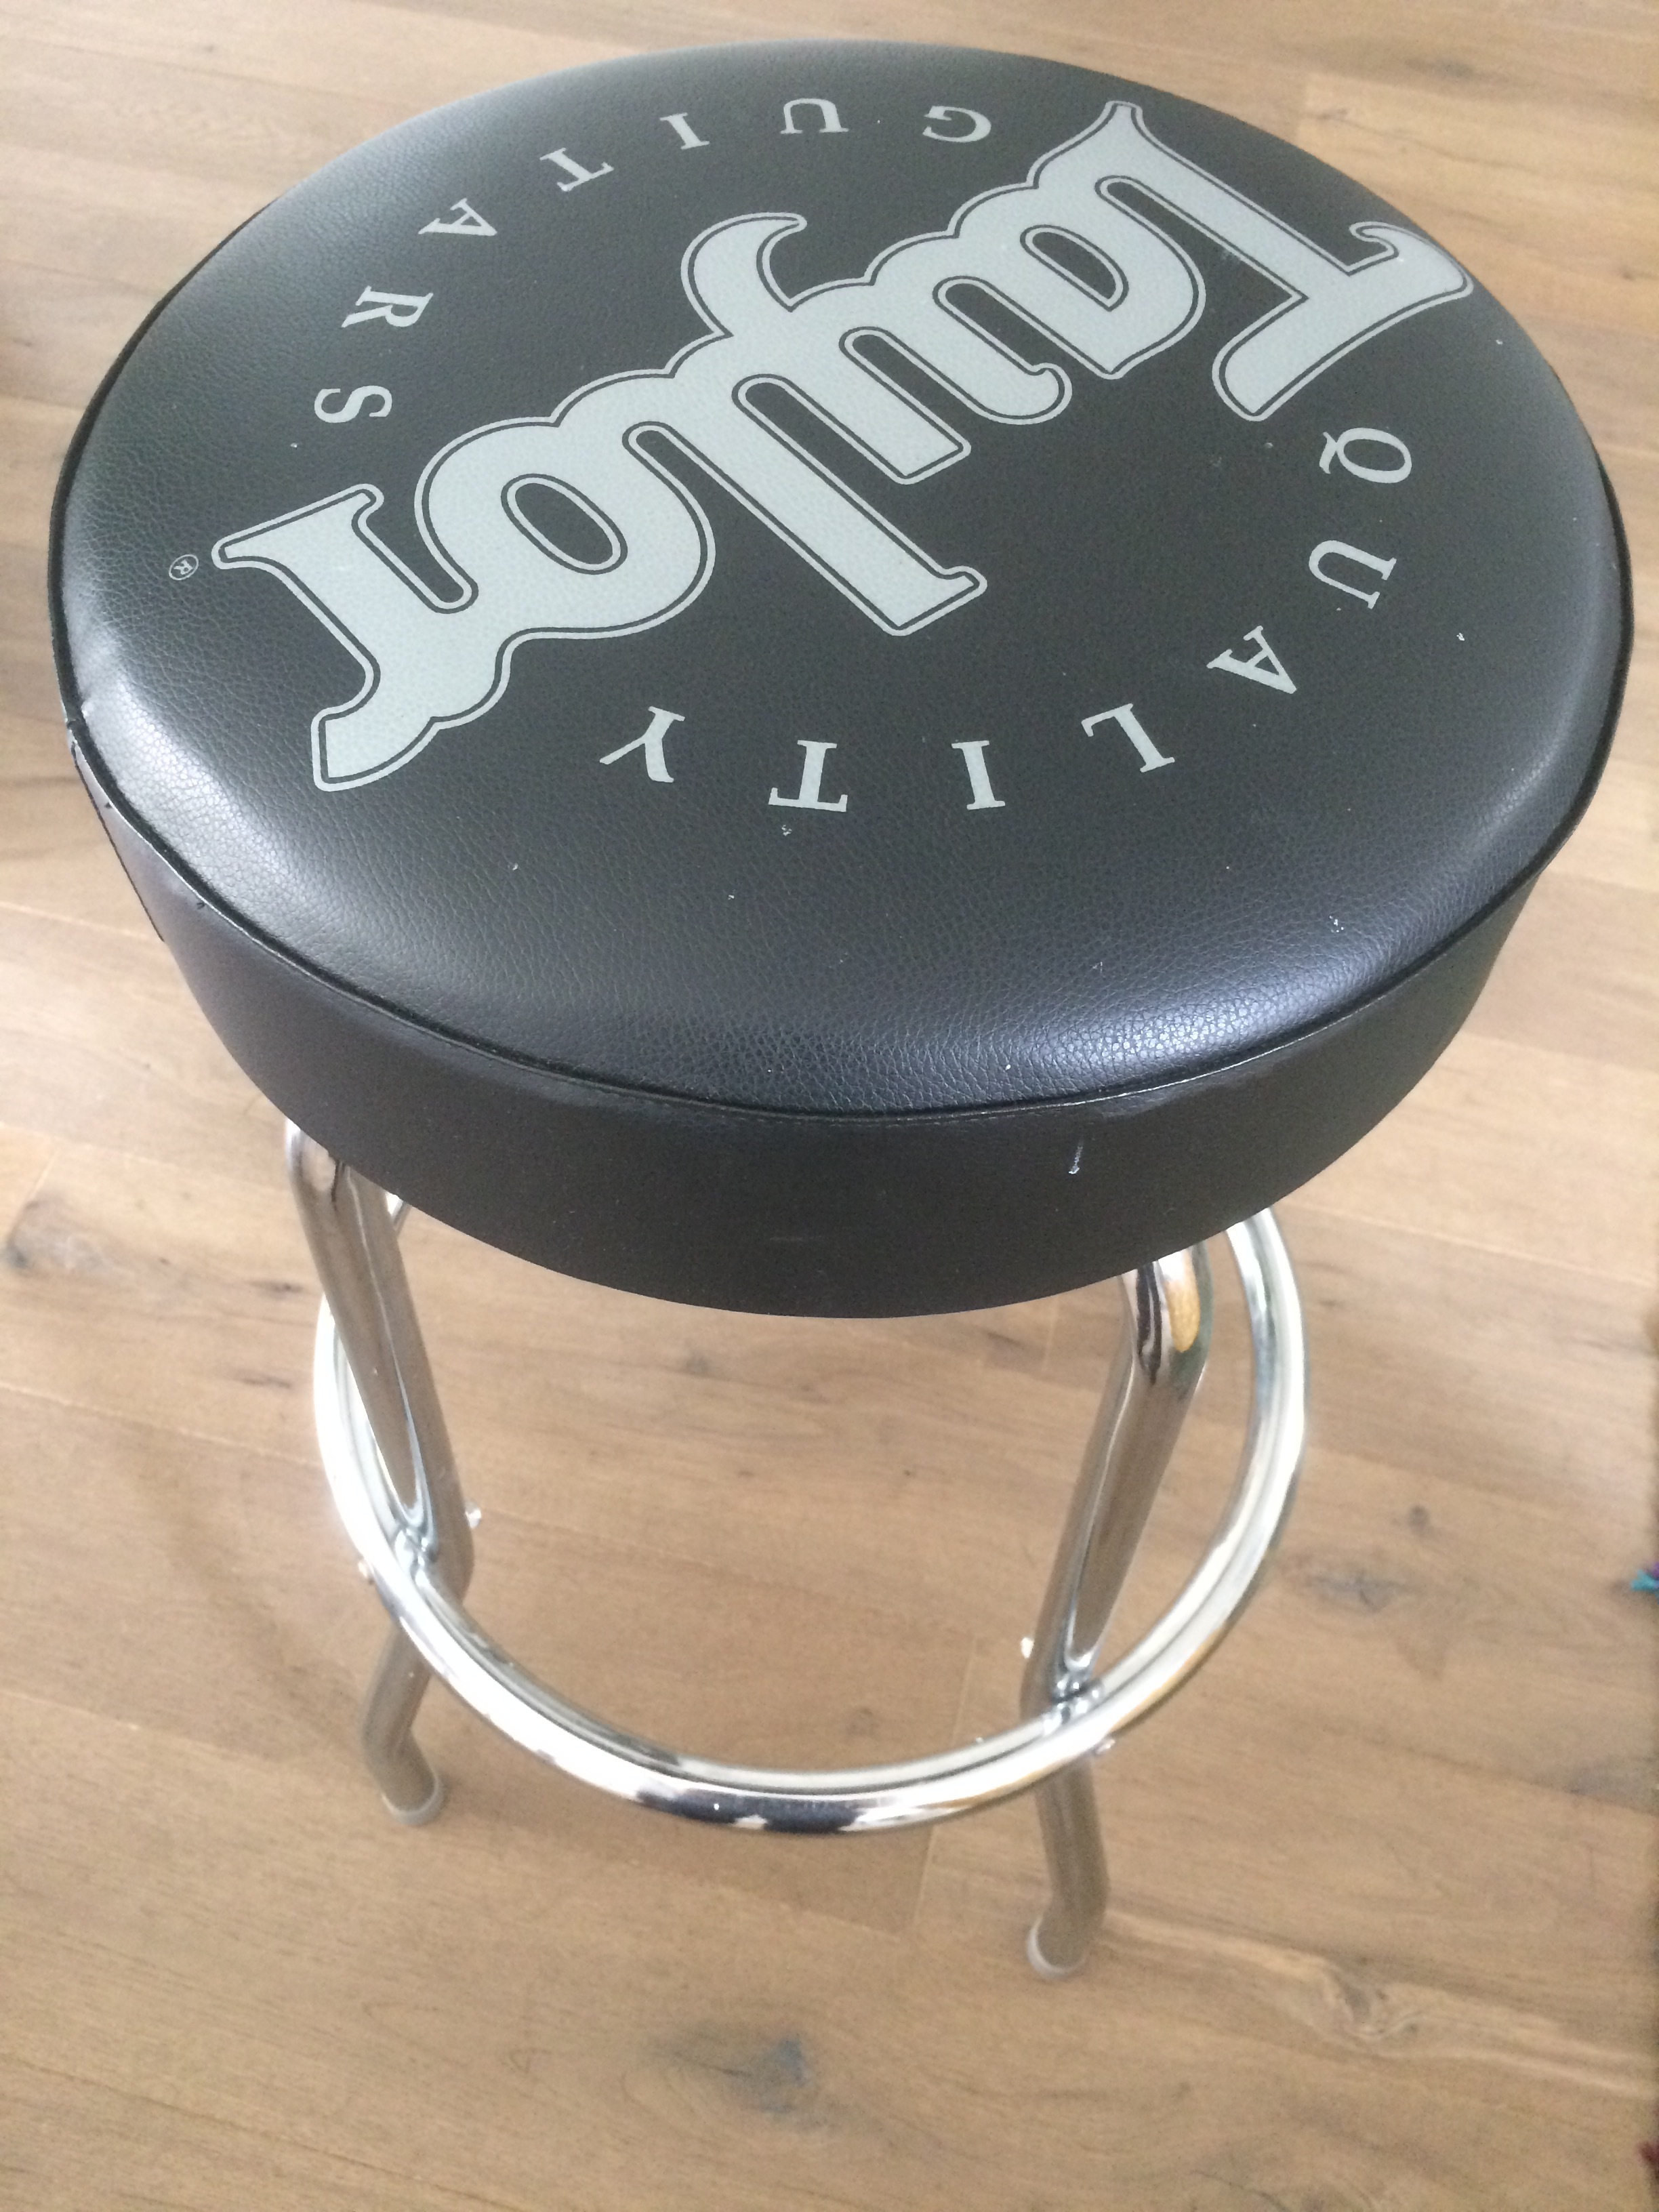 jl audio bar stools